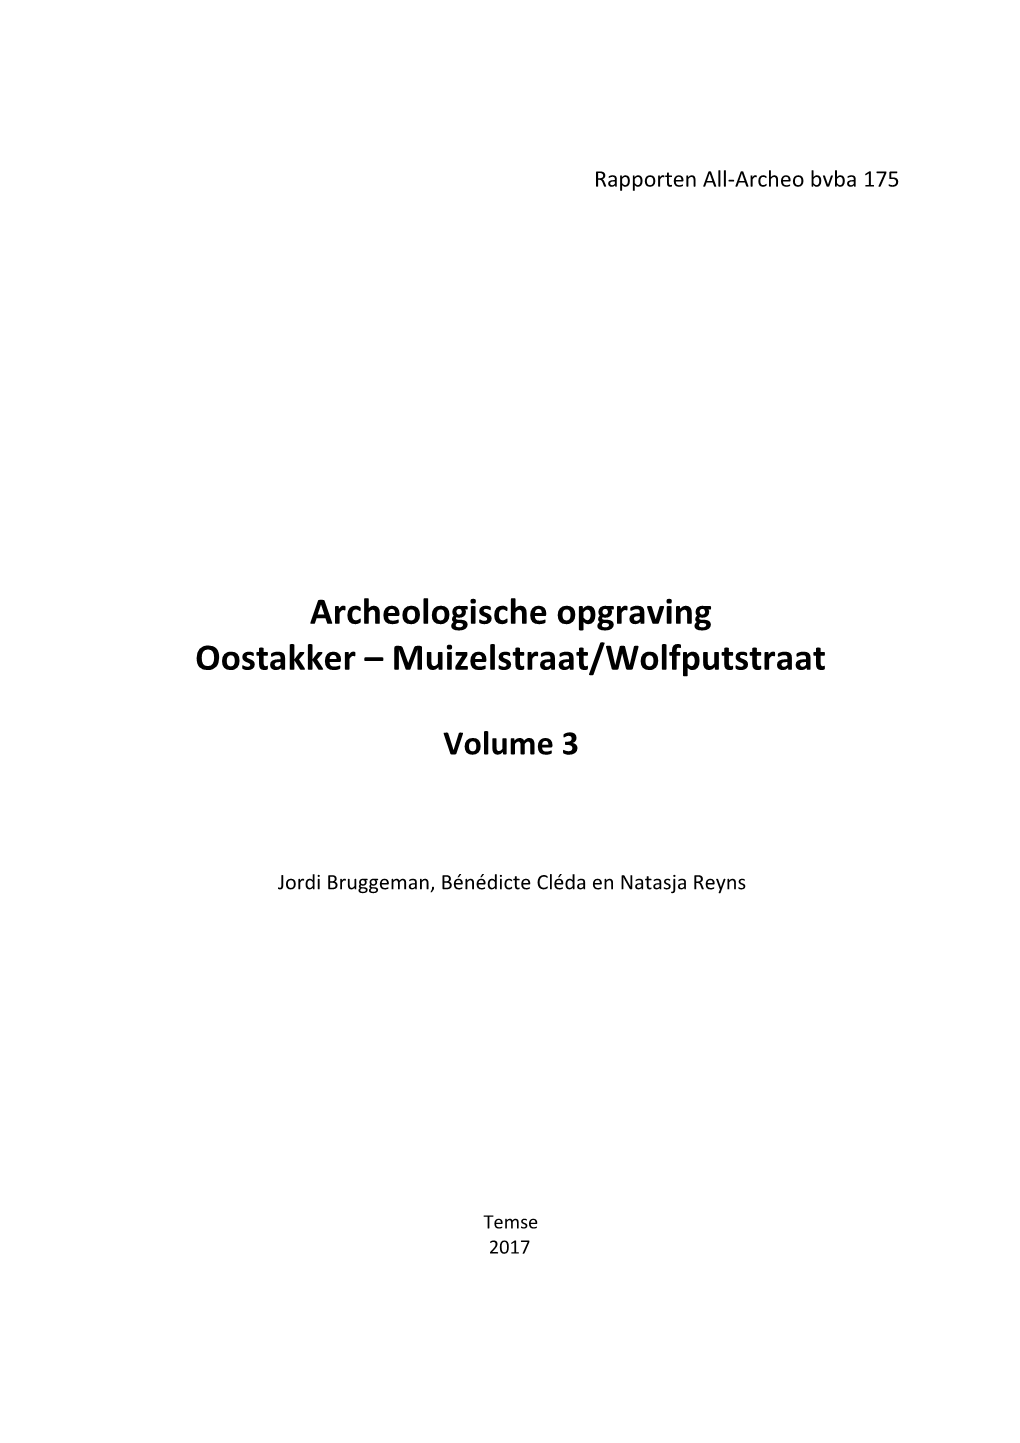 Archeologische Opgraving Oostakker – Muizelstraat/Wolfputstraat